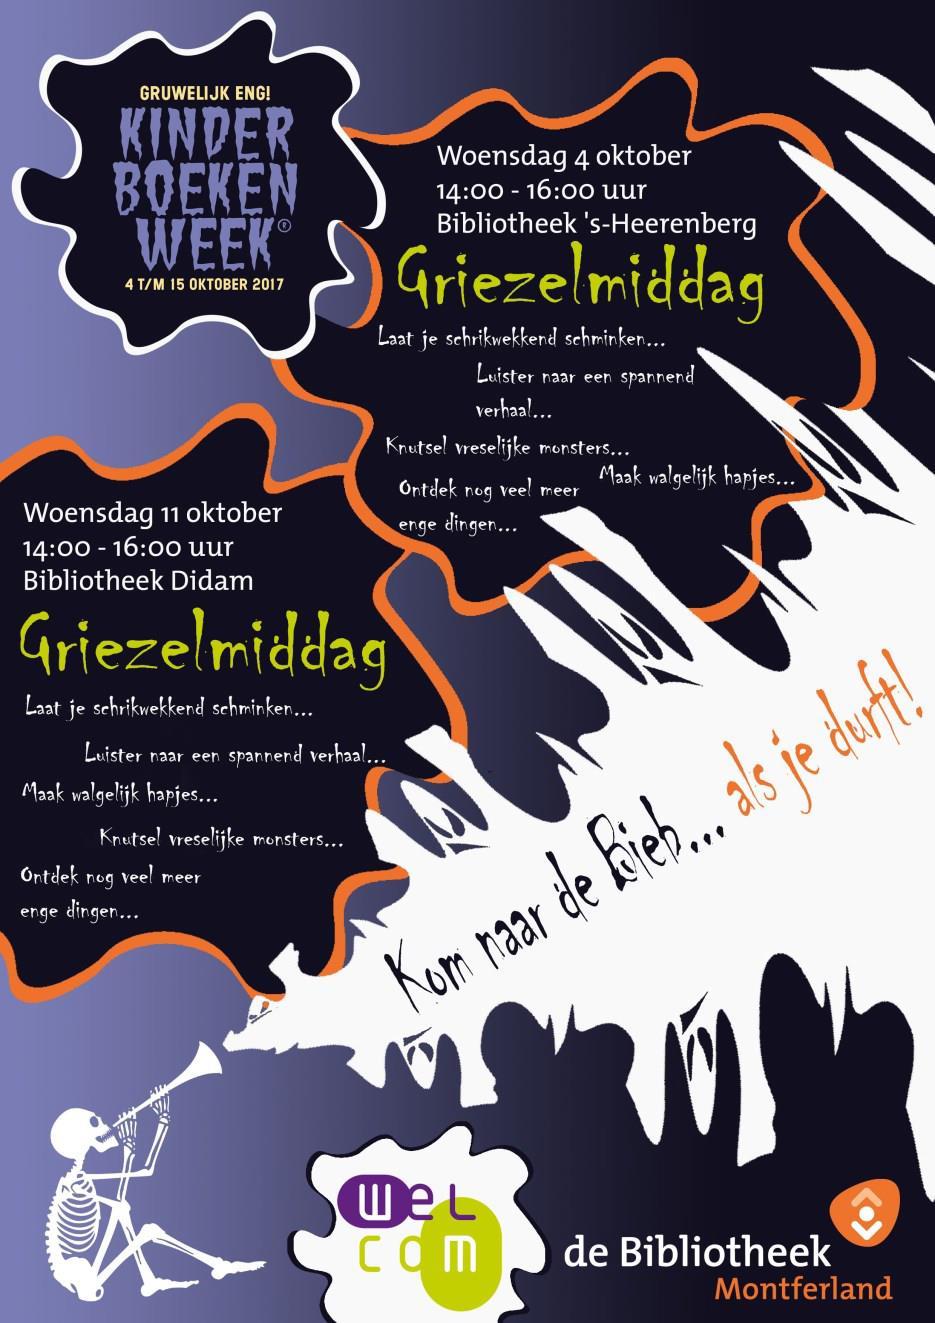 Op 4 oktober 2017 start de Kinderboekenweek 2017. Thema is dit jaar Griezelen, gruwelijk eng. Welcom organiseert i.s.m. Bibliotheek Montferland 2 workshops rondom dit thema met allerlei leuke activiteiten.